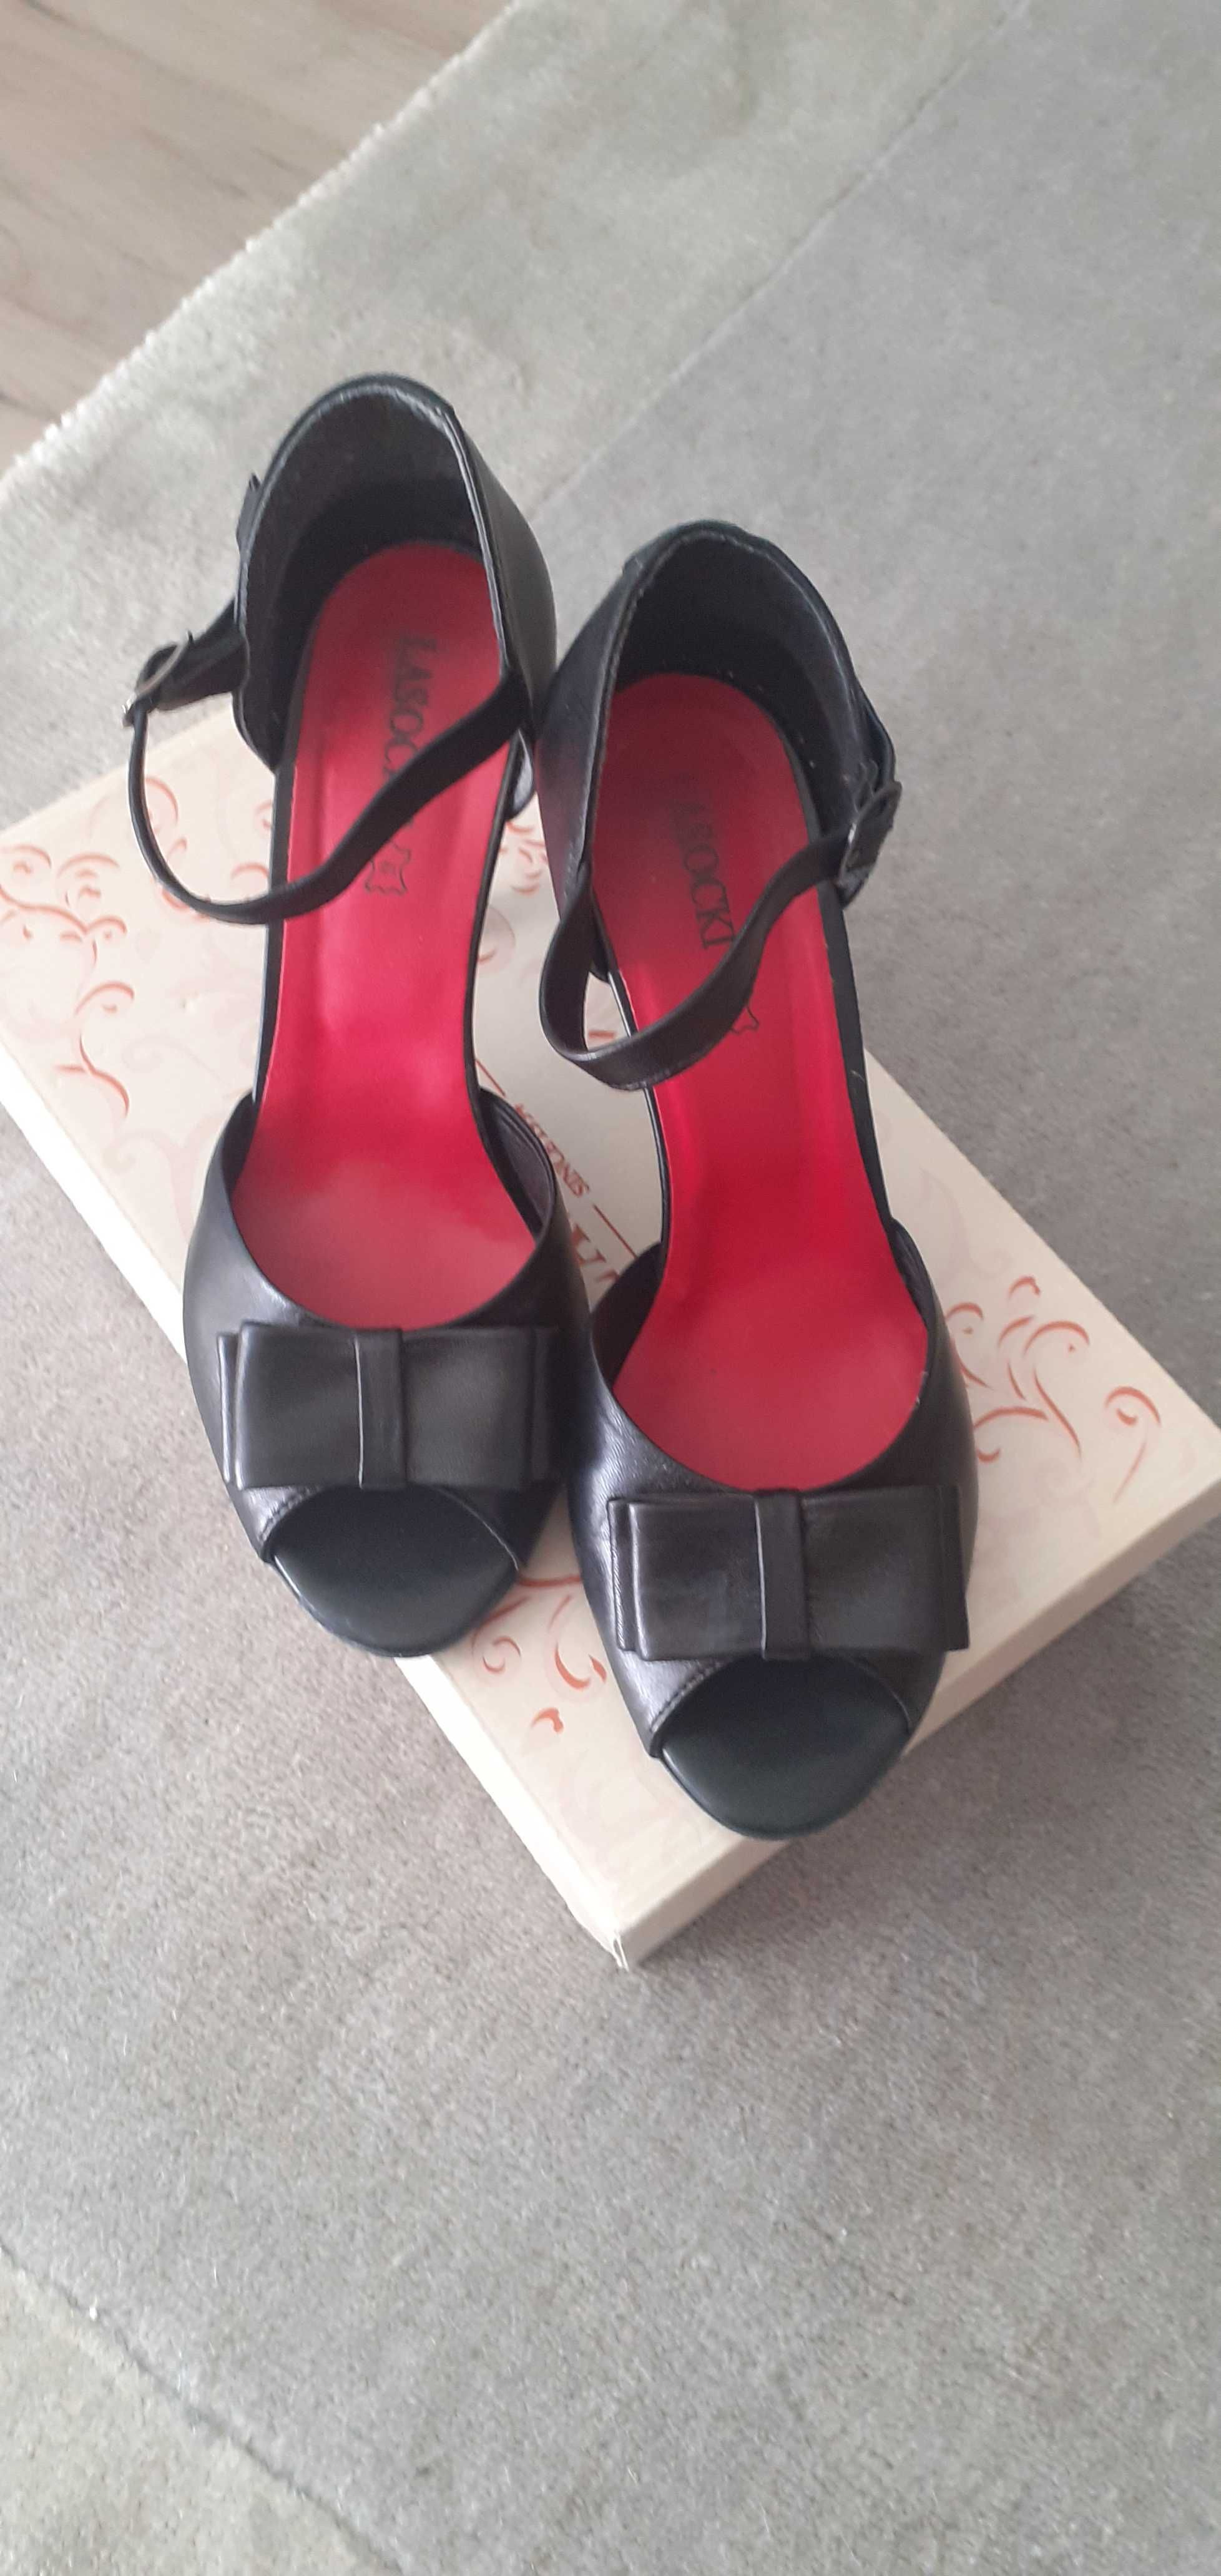 Czarne sandały roz 36 firmy Lasocki nowe b/metki